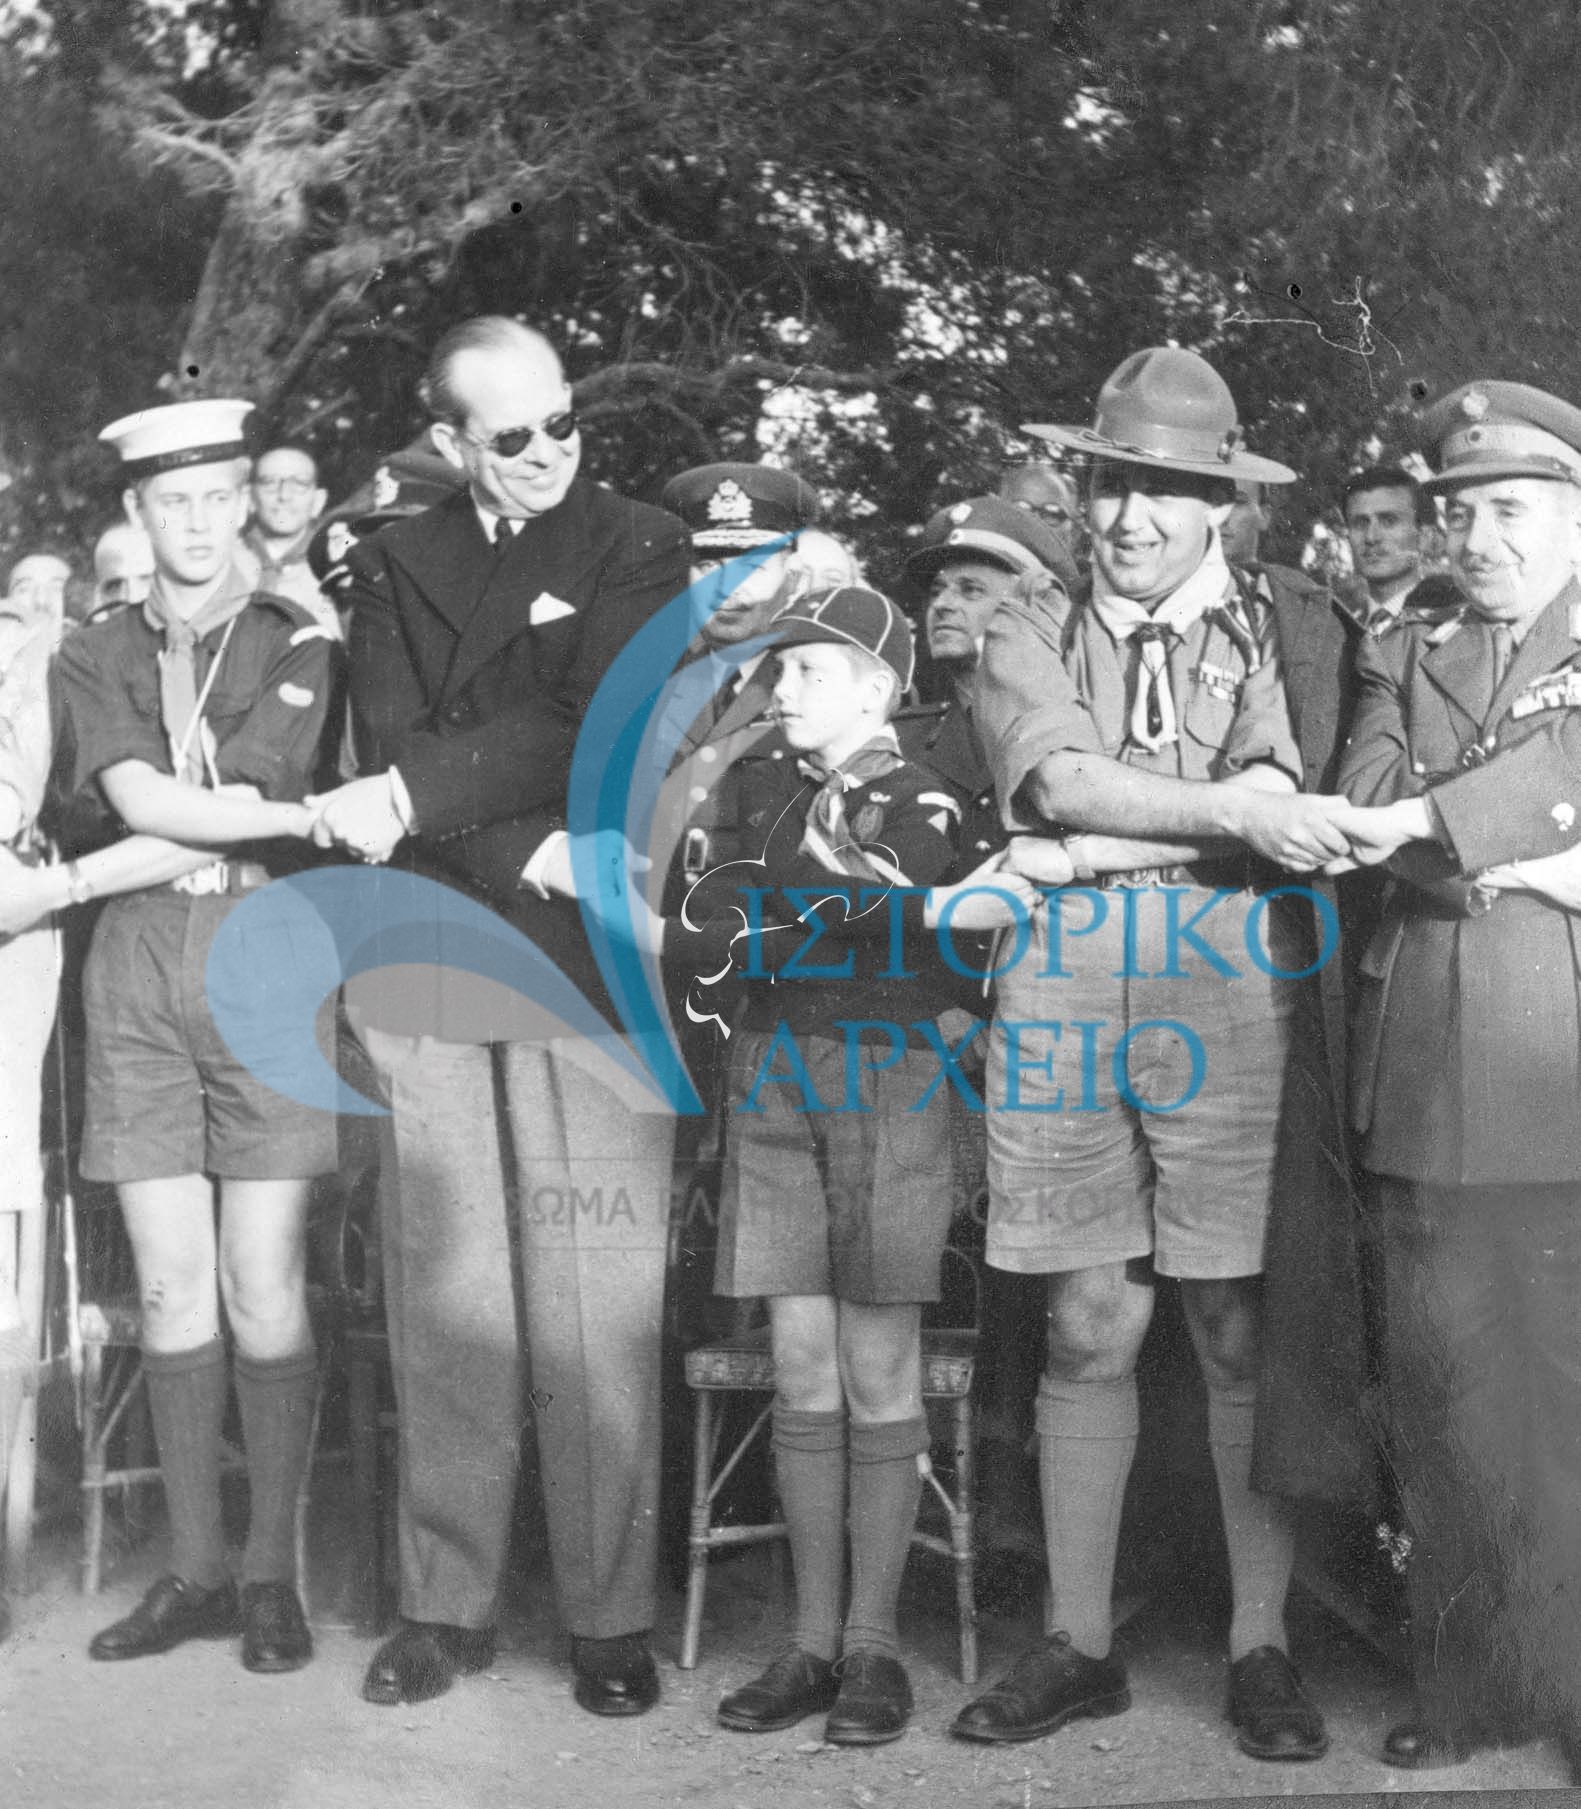 Εορταστική πυρά για την Δ` Συνάντηση Πτυχιούχων Διακριτικού Δάσους στο Προσκοπικό Κέντρο Πύργου Βασιλίσσης το 1951. Από αριστερά: Πρίγκιπας Κάρολος, Βασιλιάς Παύλος, Διάδοχος Κωνσταντίνος με στολή λυκόπουλου, και ο Δ. Αλεξάτος. 